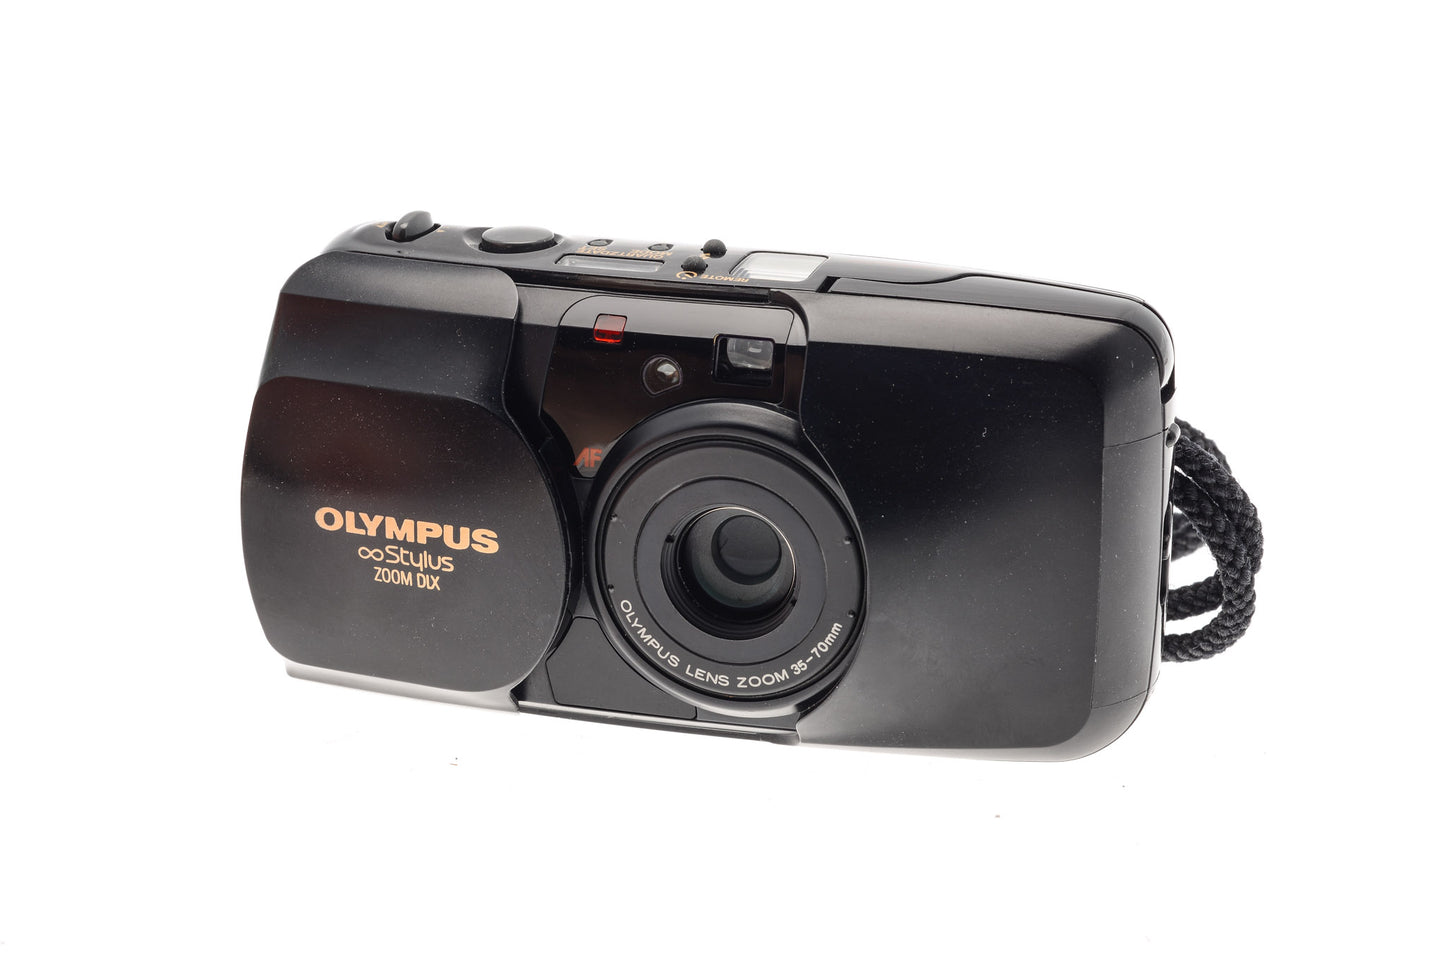 Olympus Infinity Stylus Zoom DLX - Camera